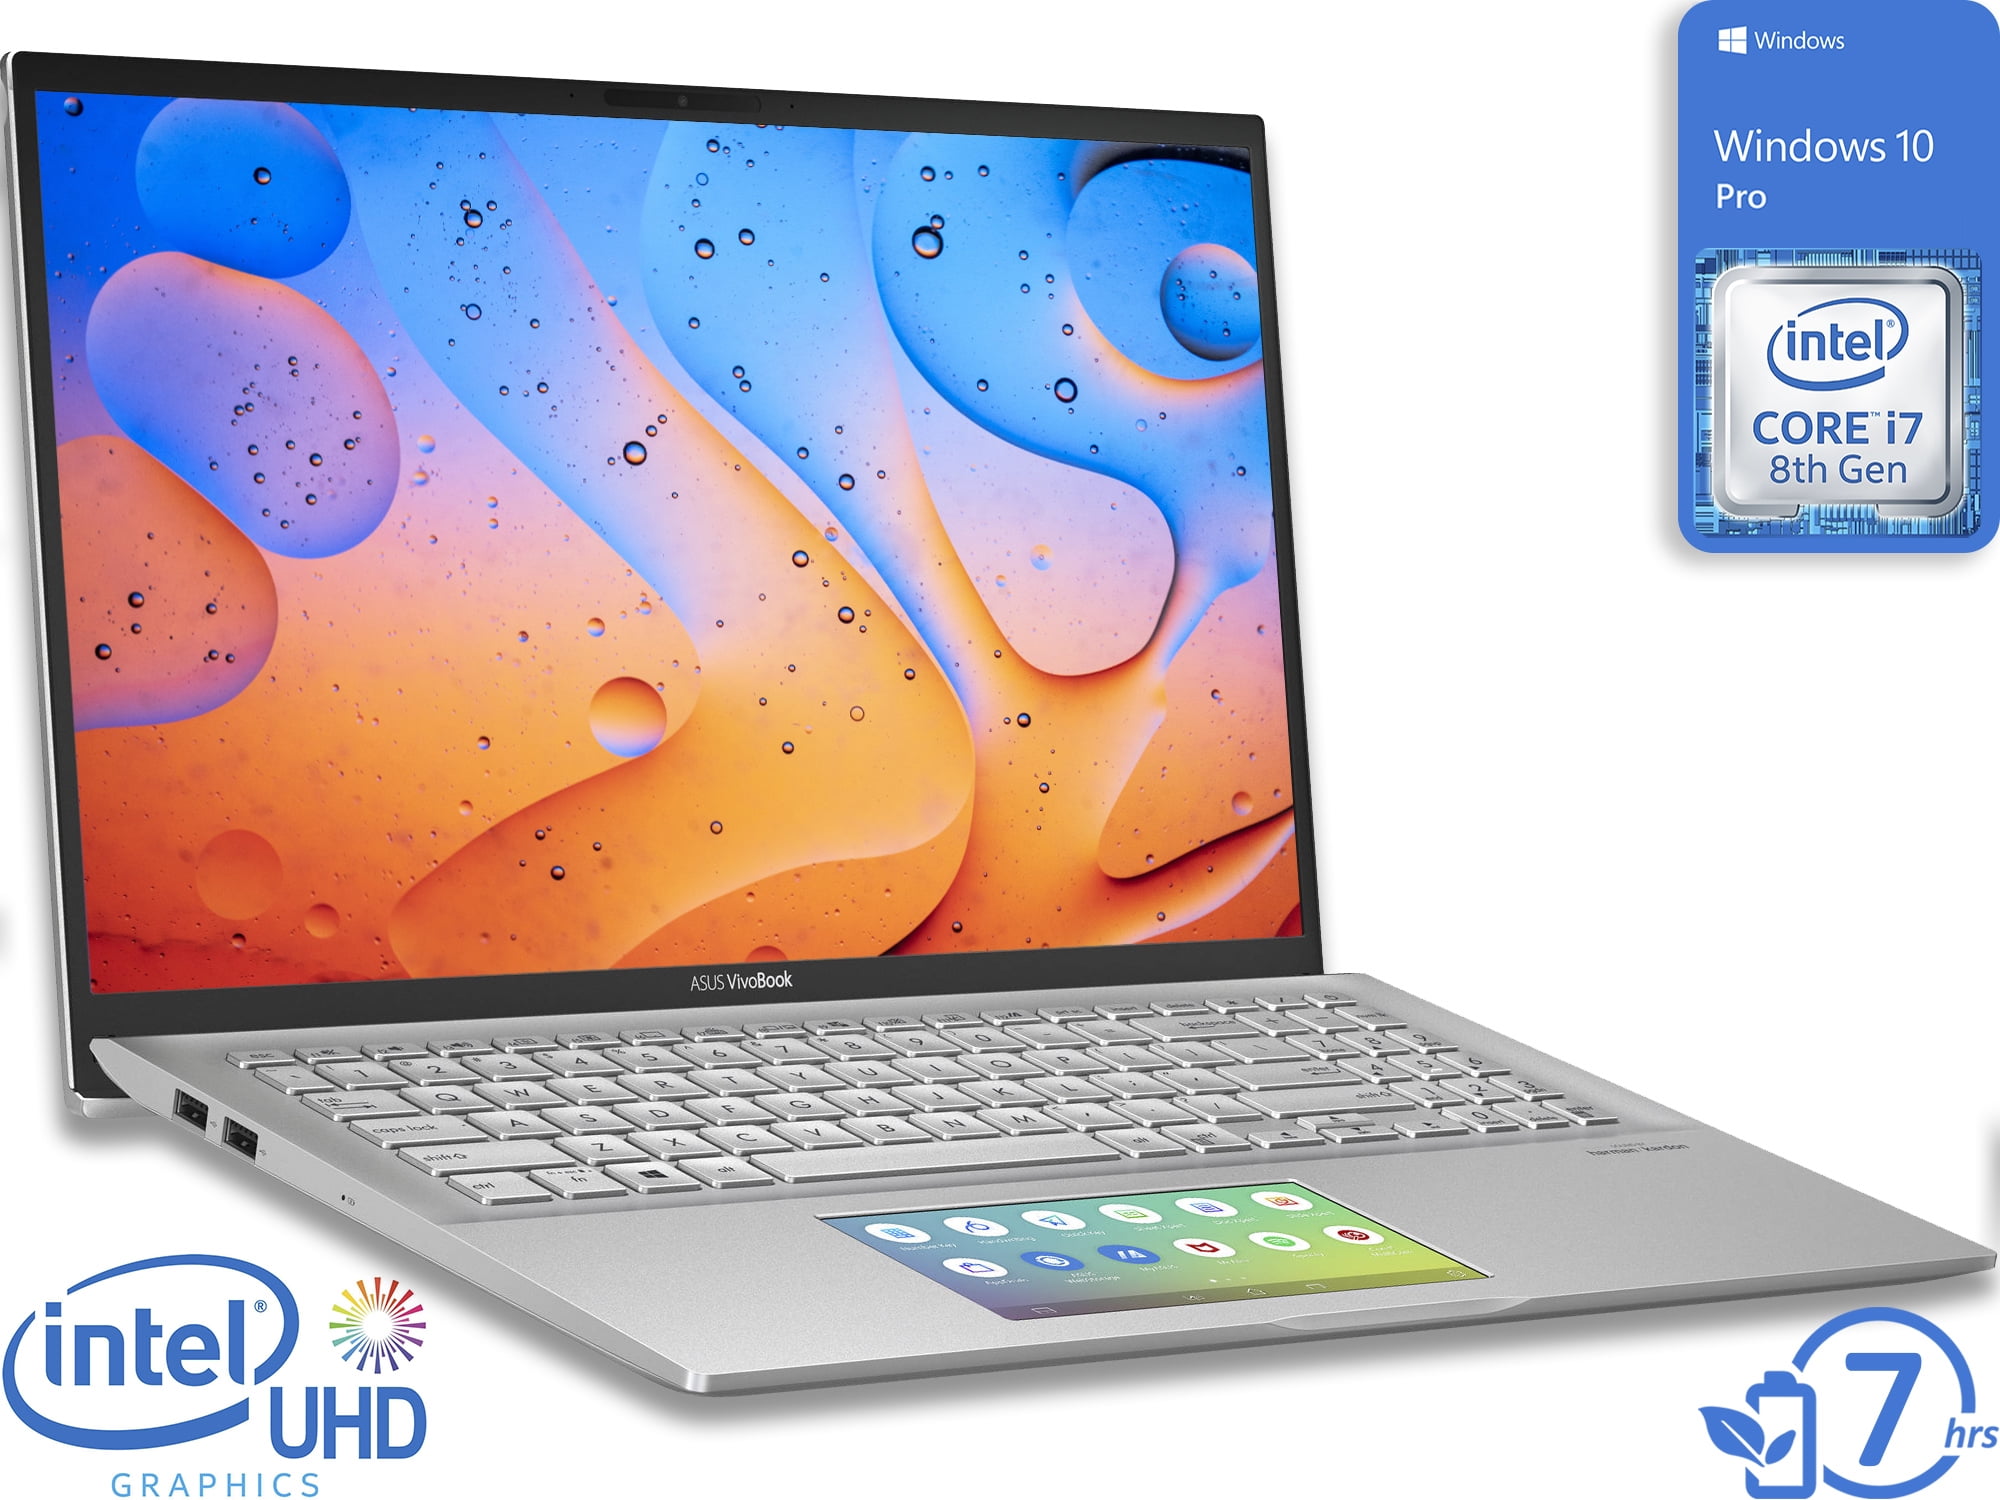 ASUS ZenBook 13 Ultra-Slim Laptop 13.3” FHD WideView, 8th-Gen Intel Core  i7-8565U Processor, 8GB LPDDR3, 512GB PCIe SSD, Backlit KB, NumberPad